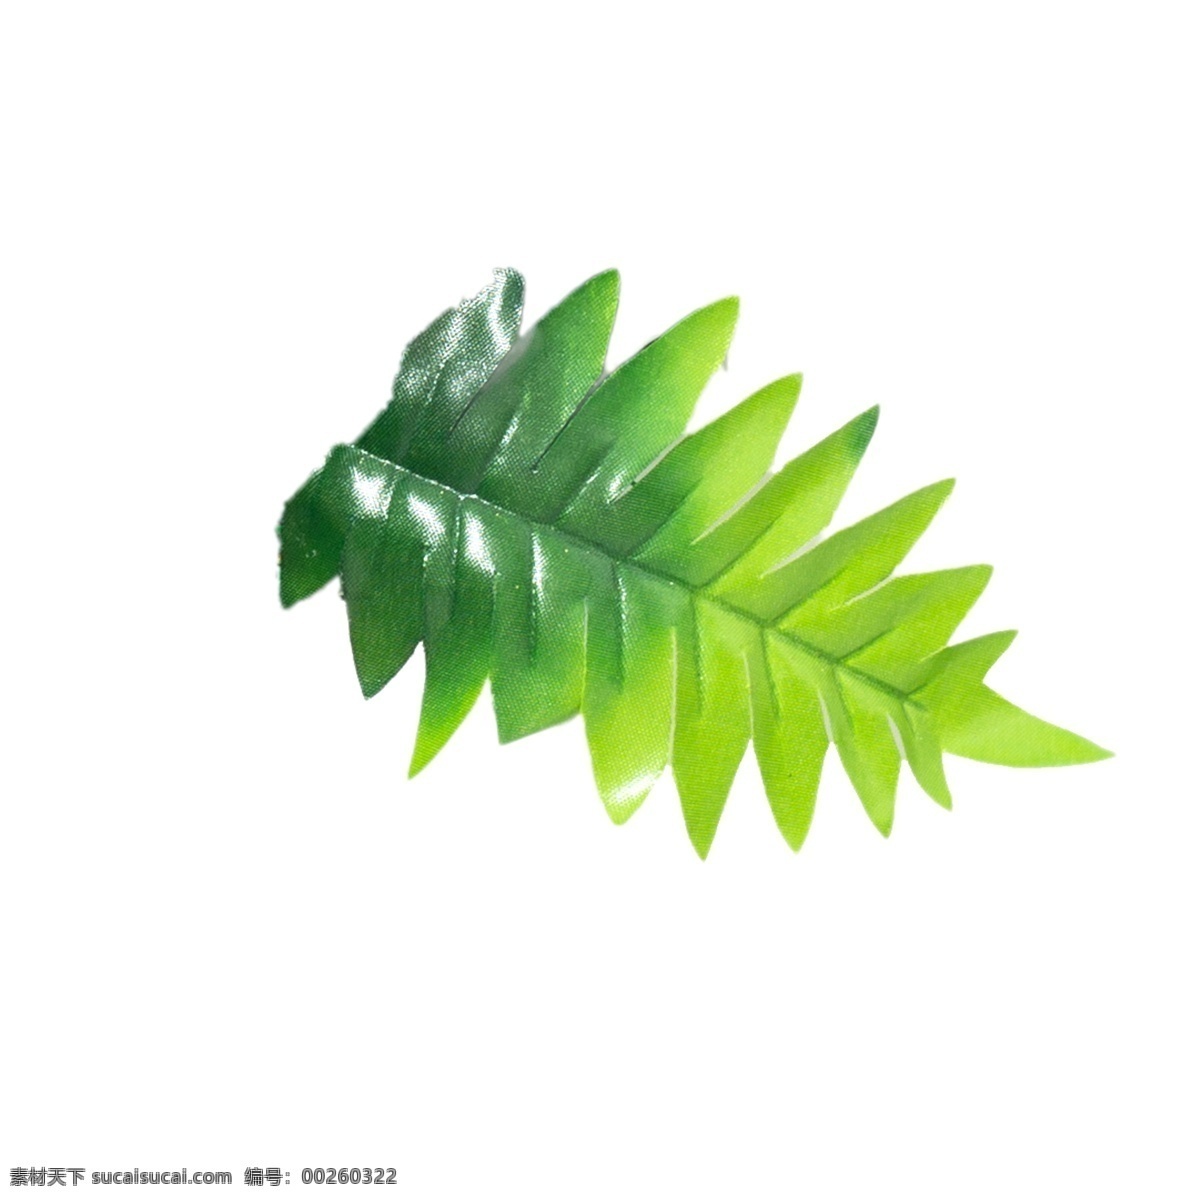 春天 绿色植物 叶子 植物绿叶 绿色叶子 春天绿叶 卡通插图 创意卡通下载 插图 png图下载